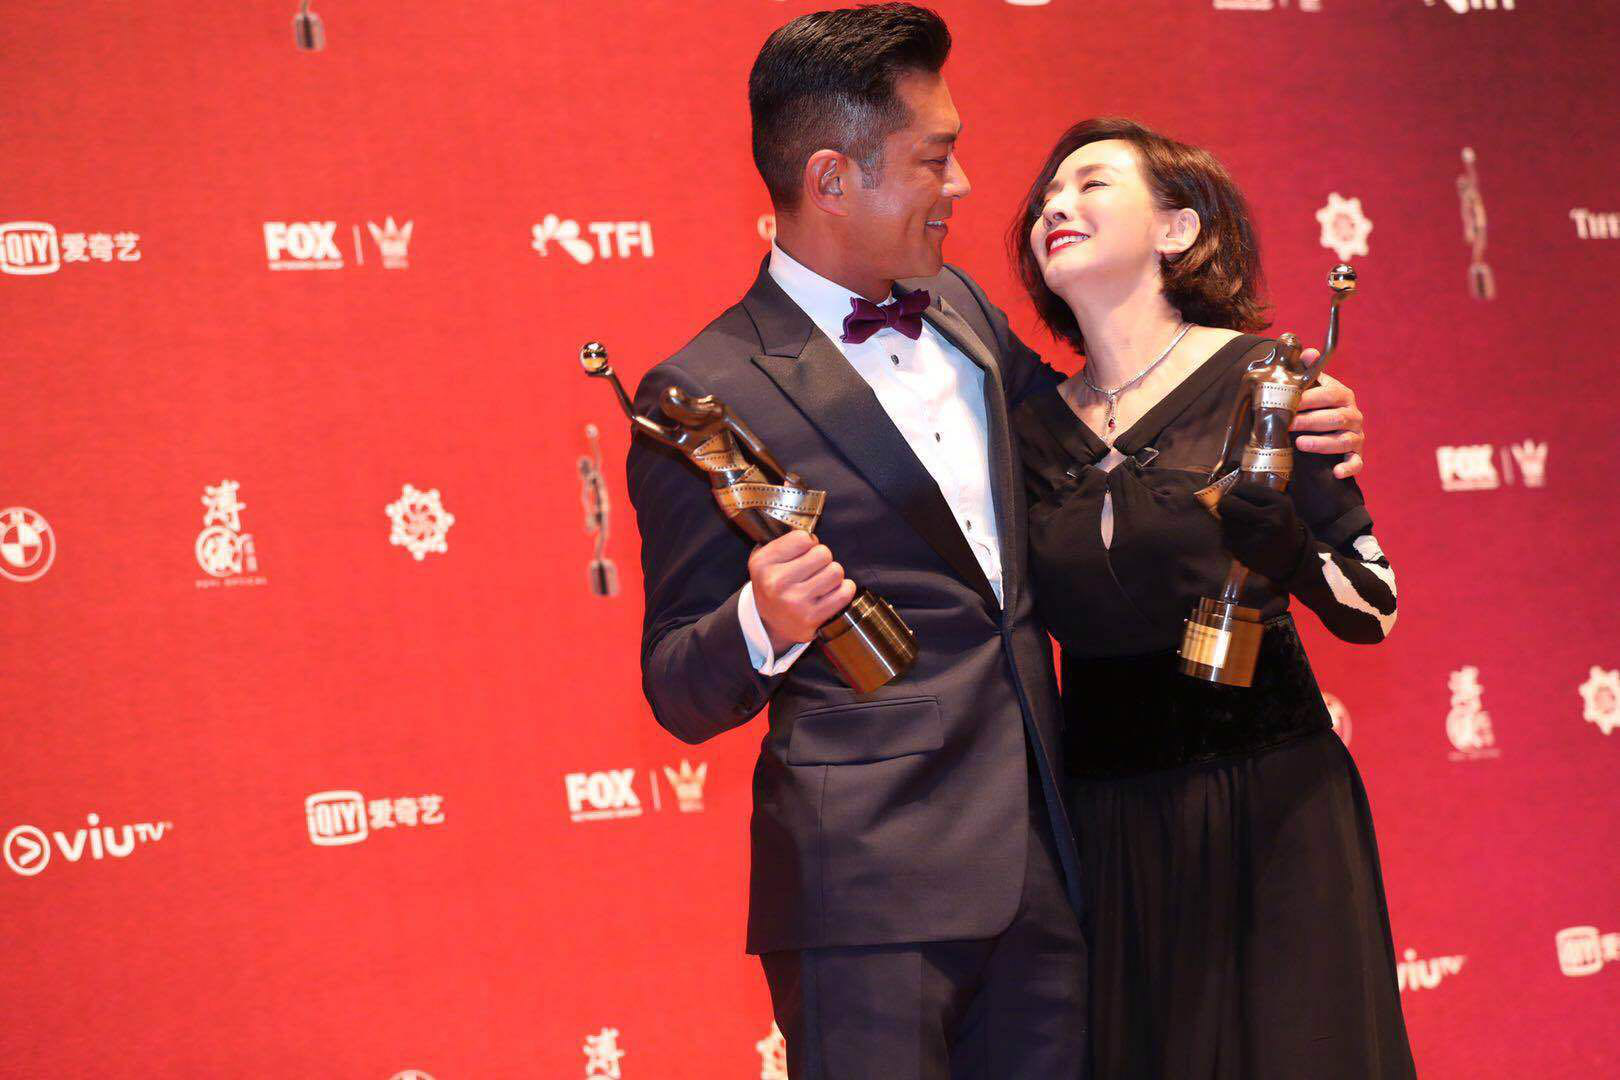 第37届香港电影金像奖图片